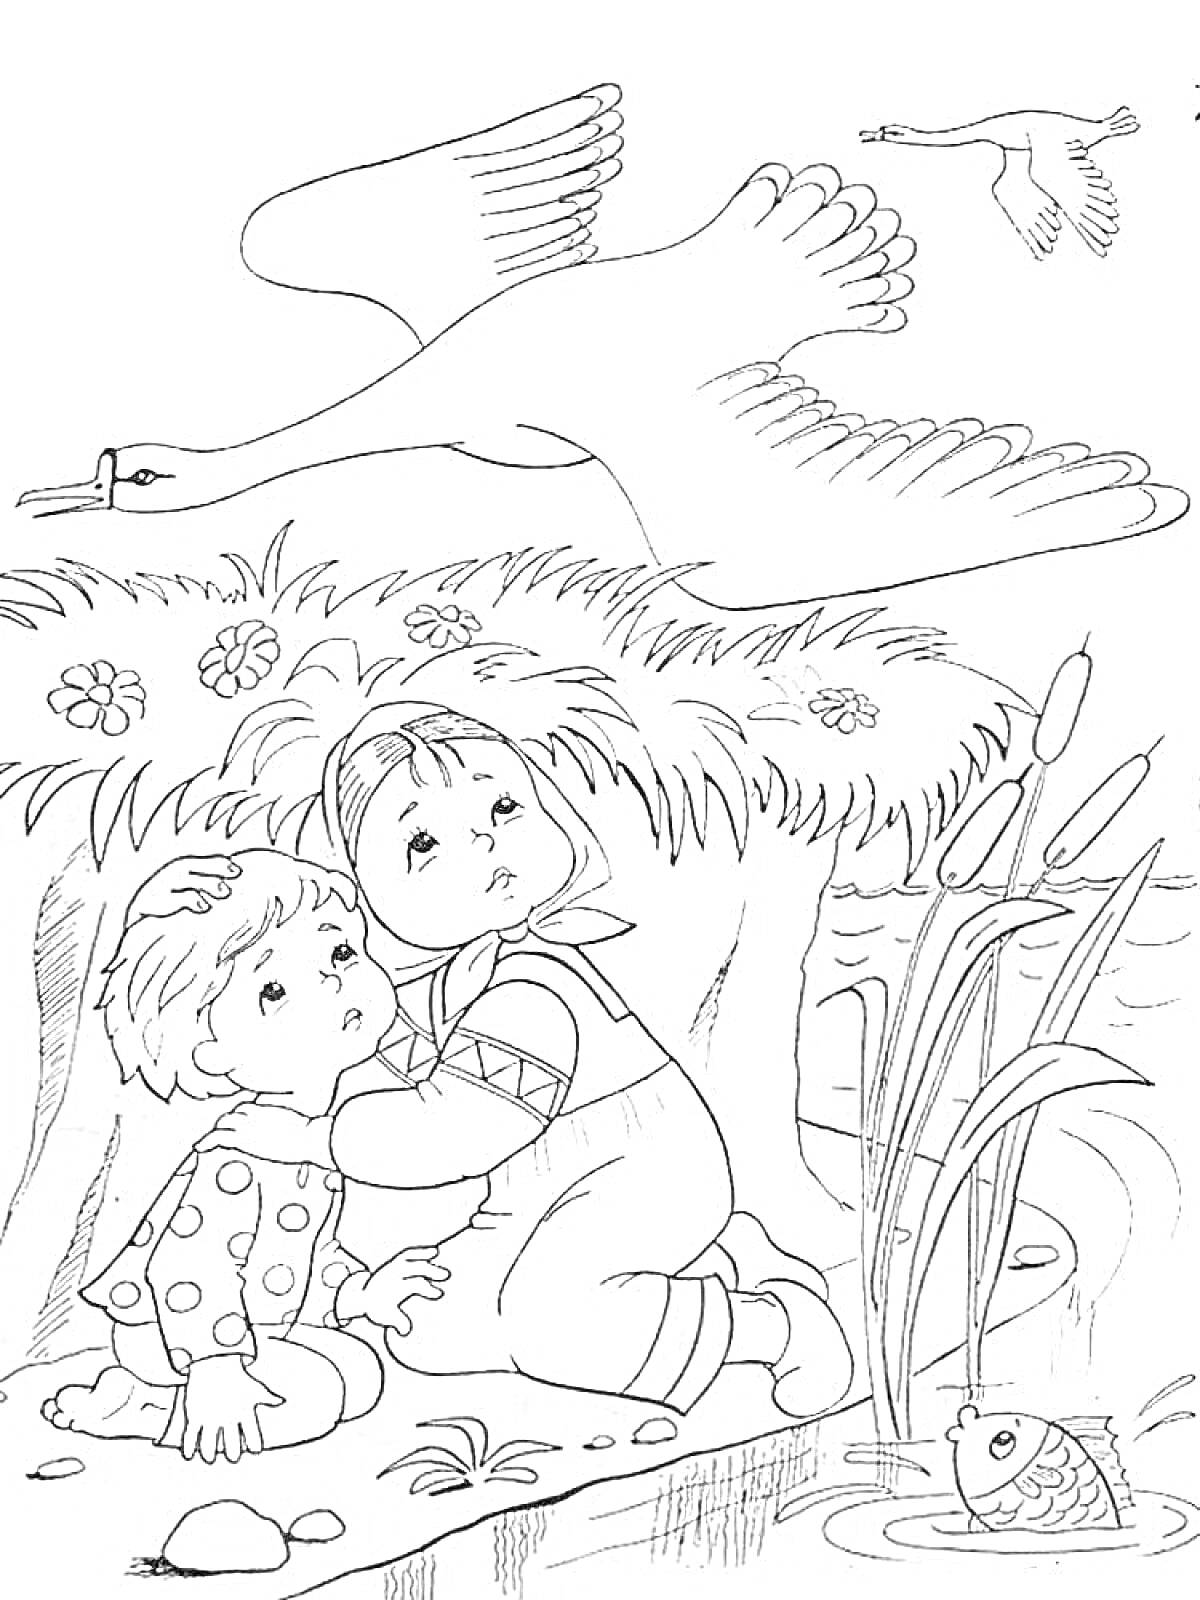 Дети прячутся от лебедей в зарослях травы у воды с рыбкой